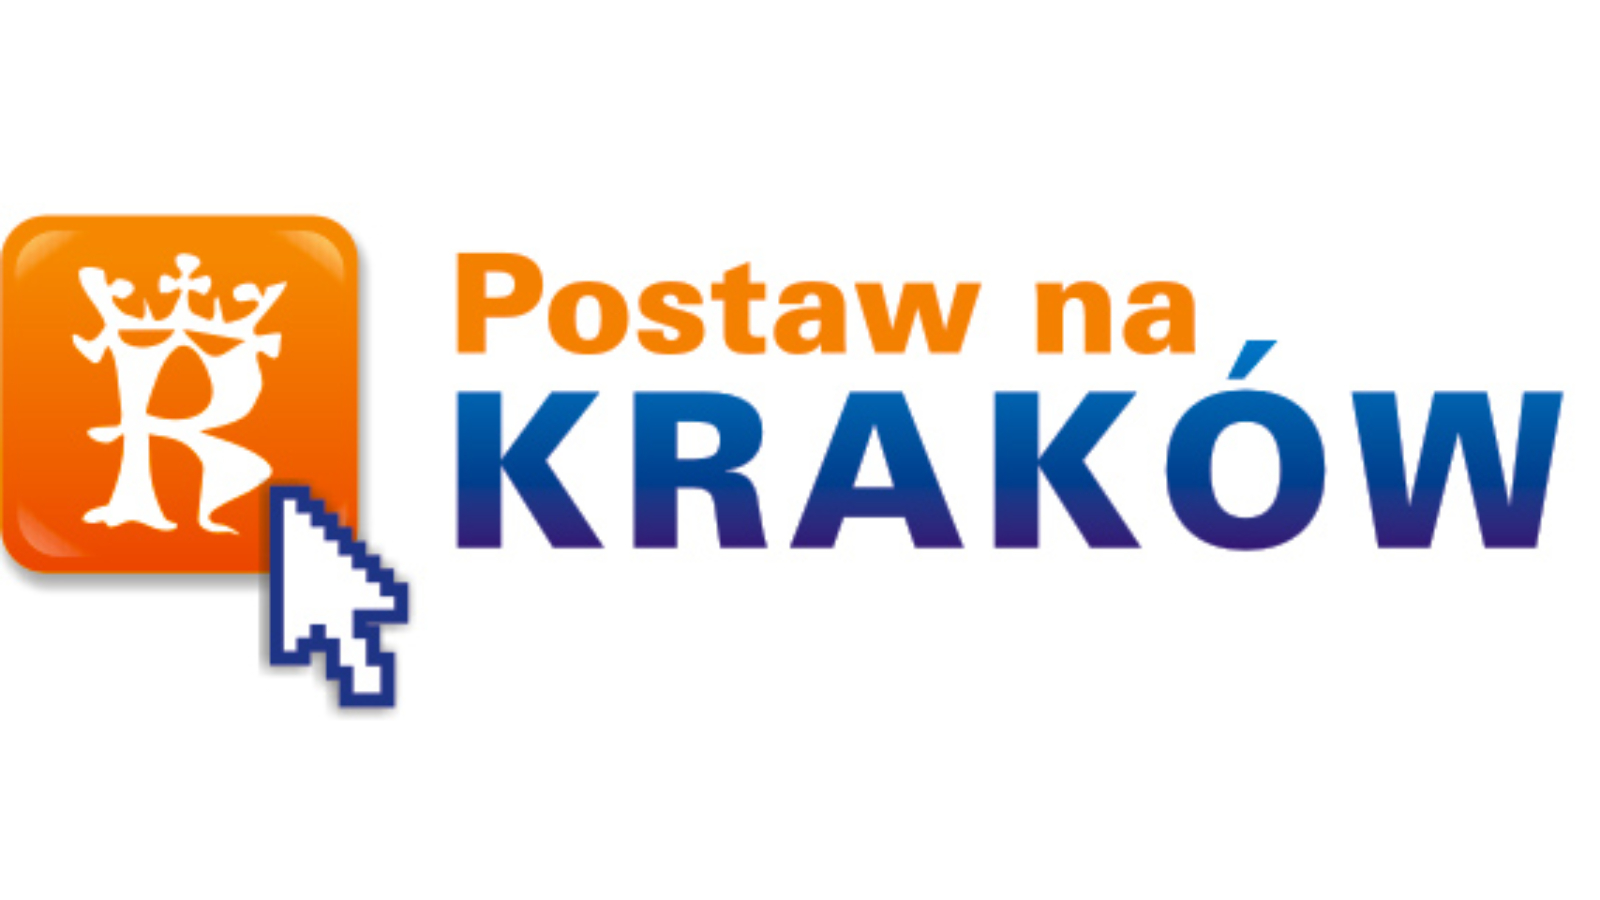 postaw_nakrakow_logo